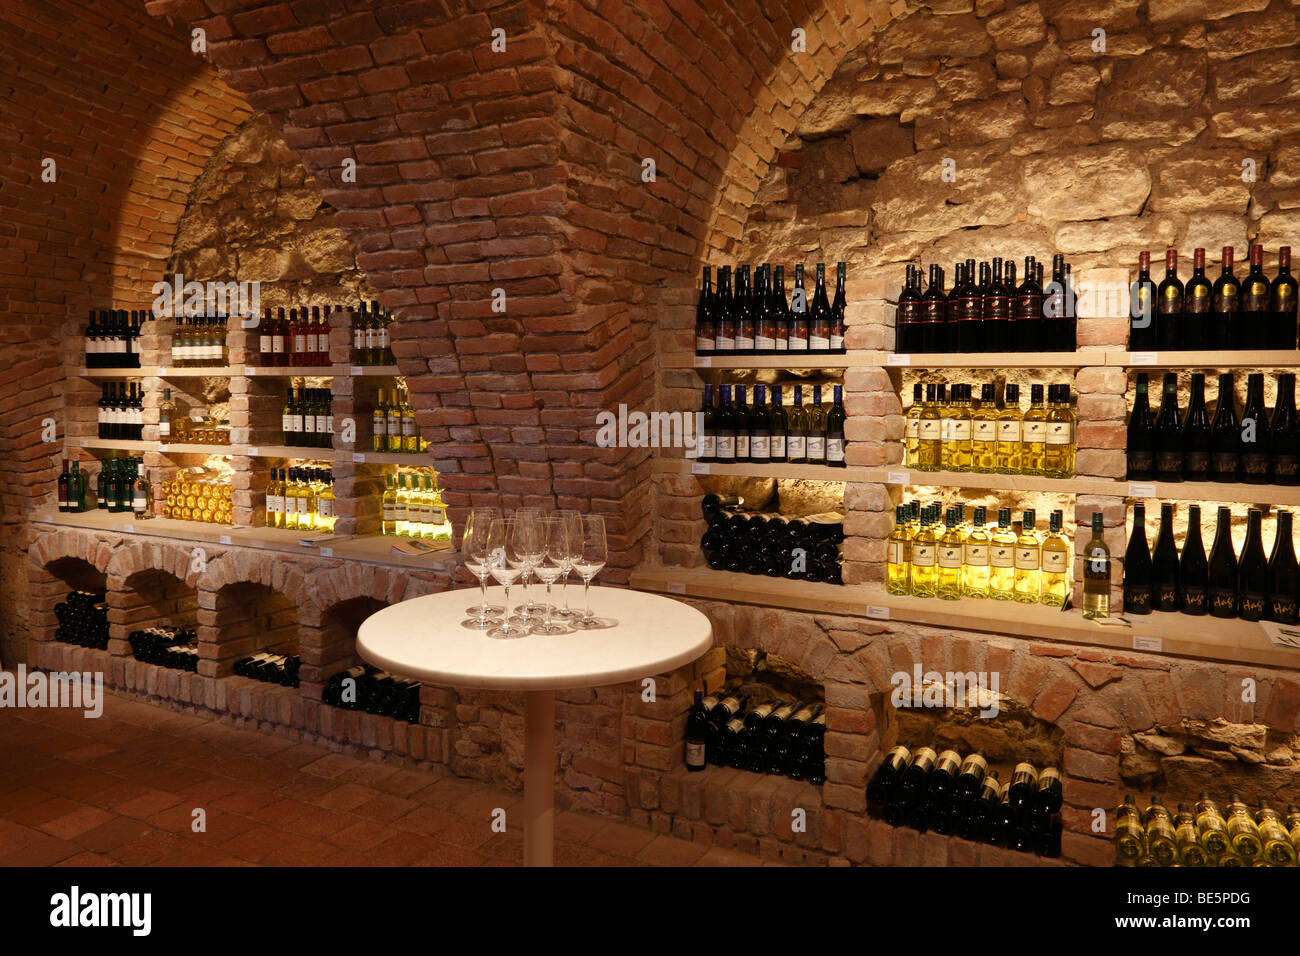 Vinotheque wine cellar in the Schloss Mailberg castle, Weinviertel region, Lower Austria, Austria, Europe Stock Photo